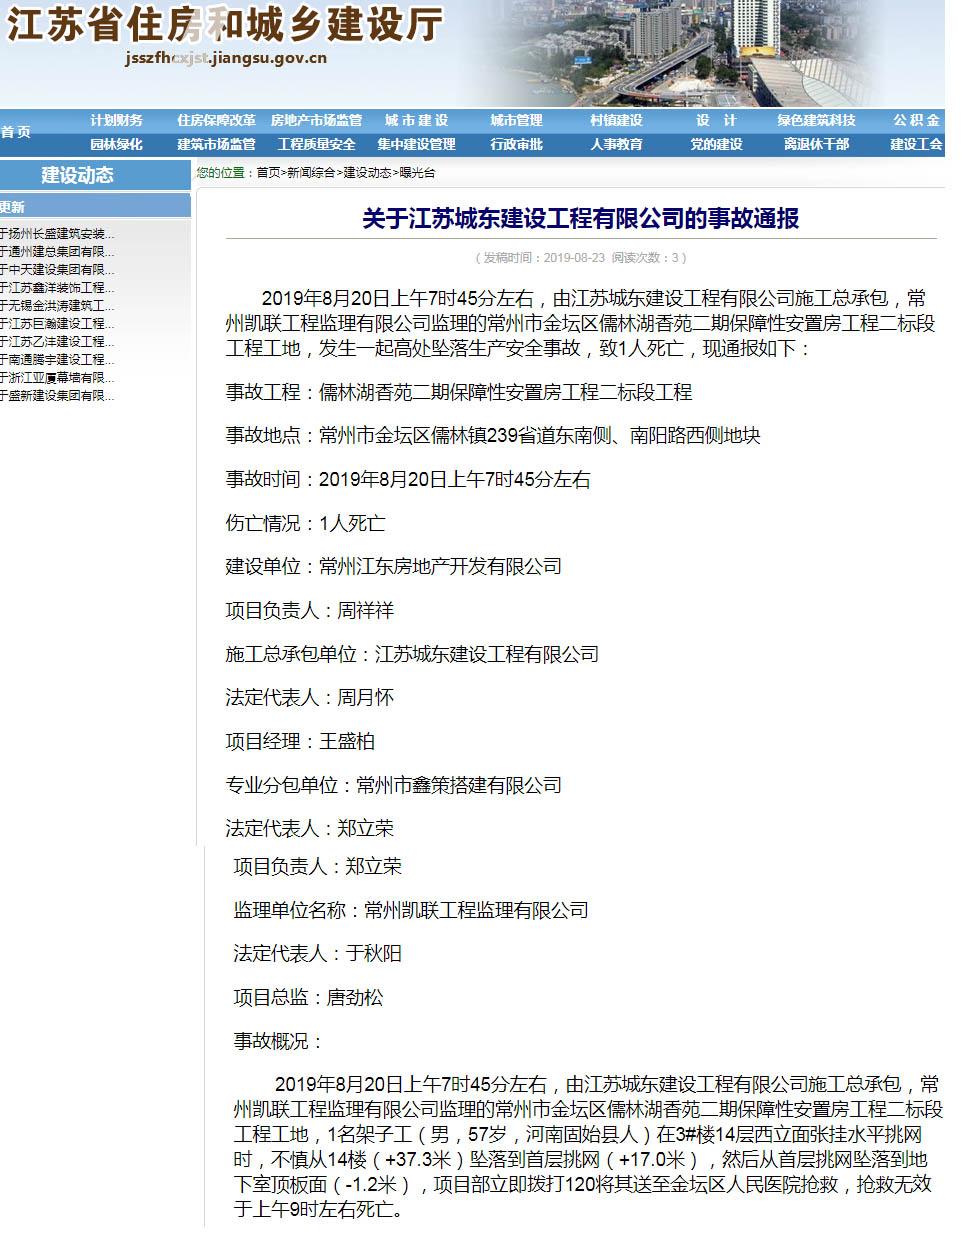 江苏城东建设工程有限公司常州儒林湖香苑项目发生安全事故 致1人死亡